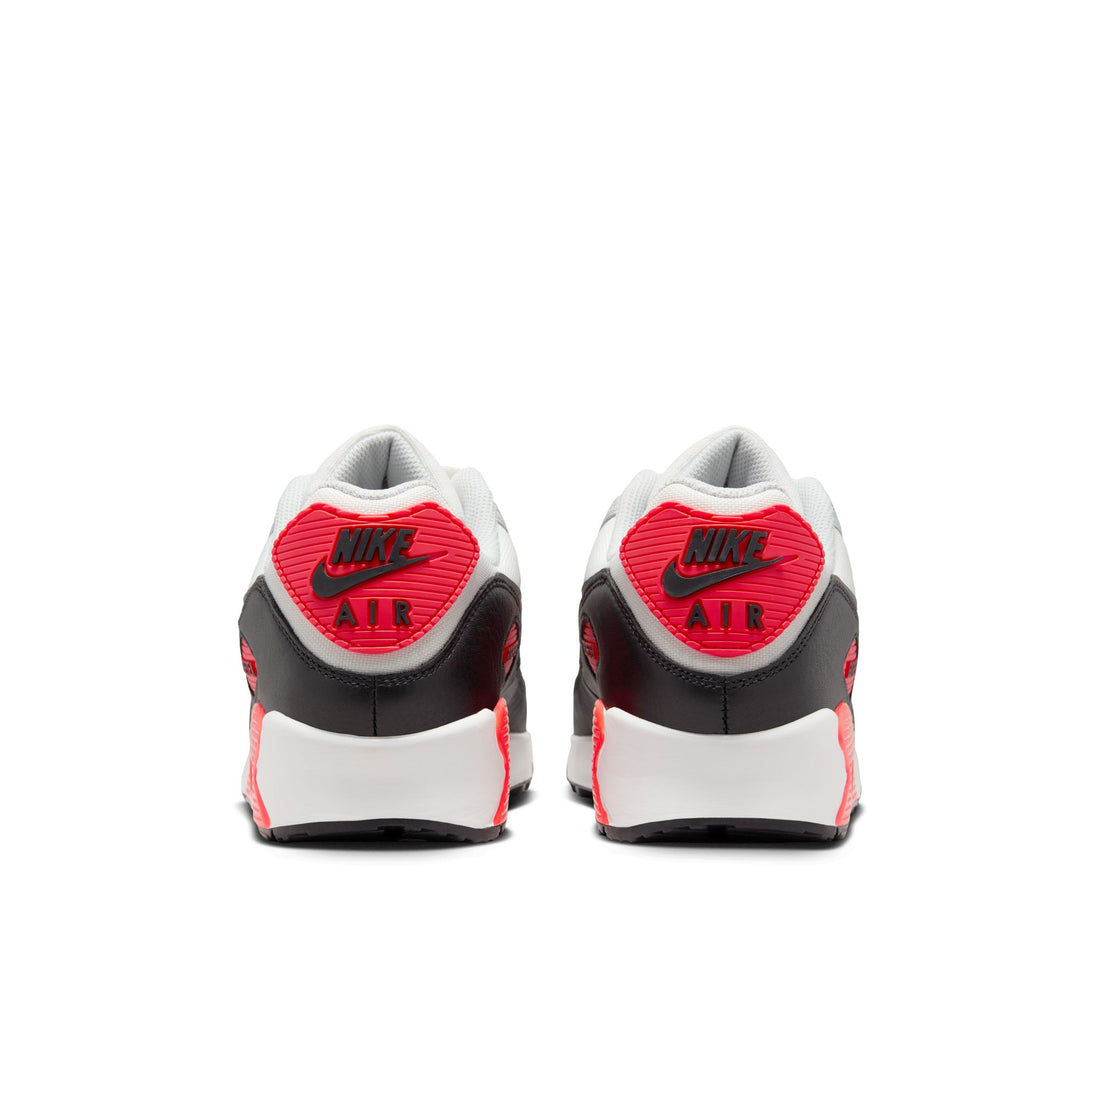 Nike Air Max 90 GORE-TEX (Summit White/Cool Grey/Bright Crimson)